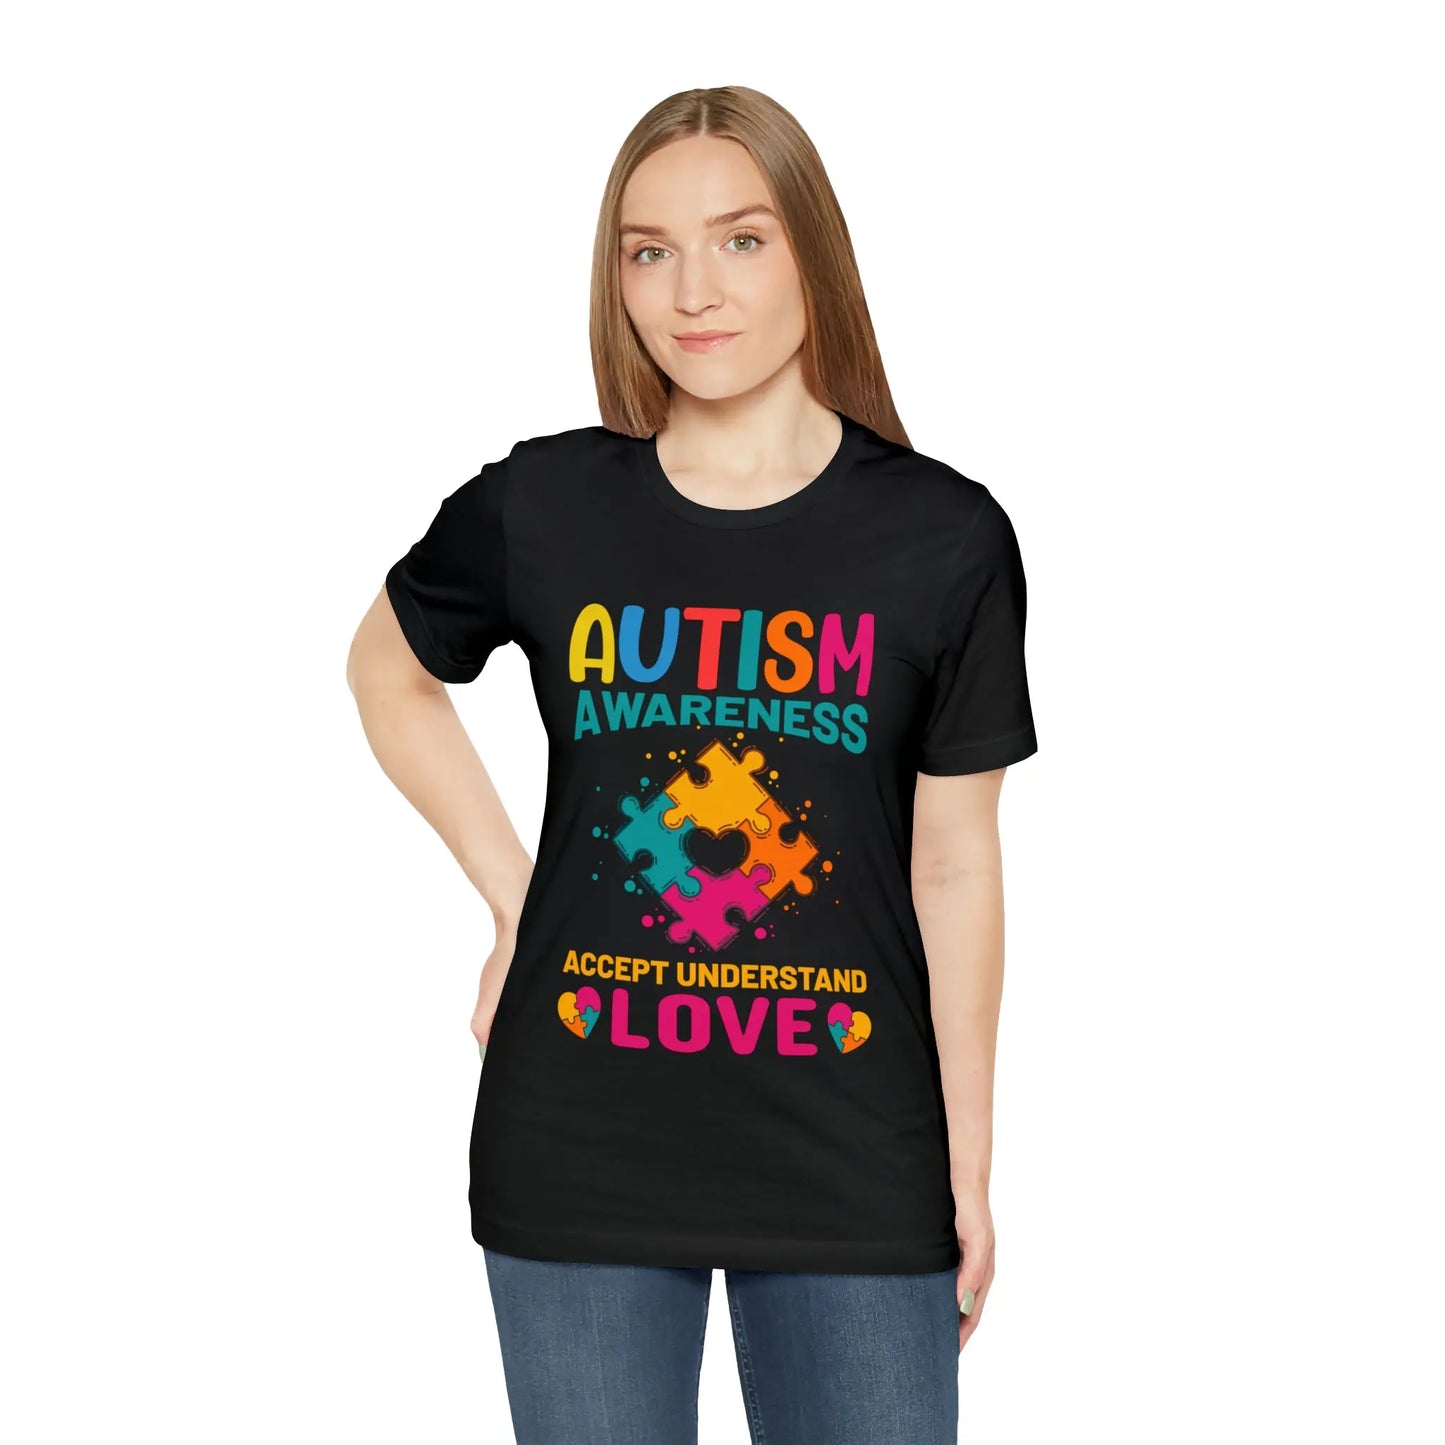 Autism Awareness T-Shirt: Accept Understand Love